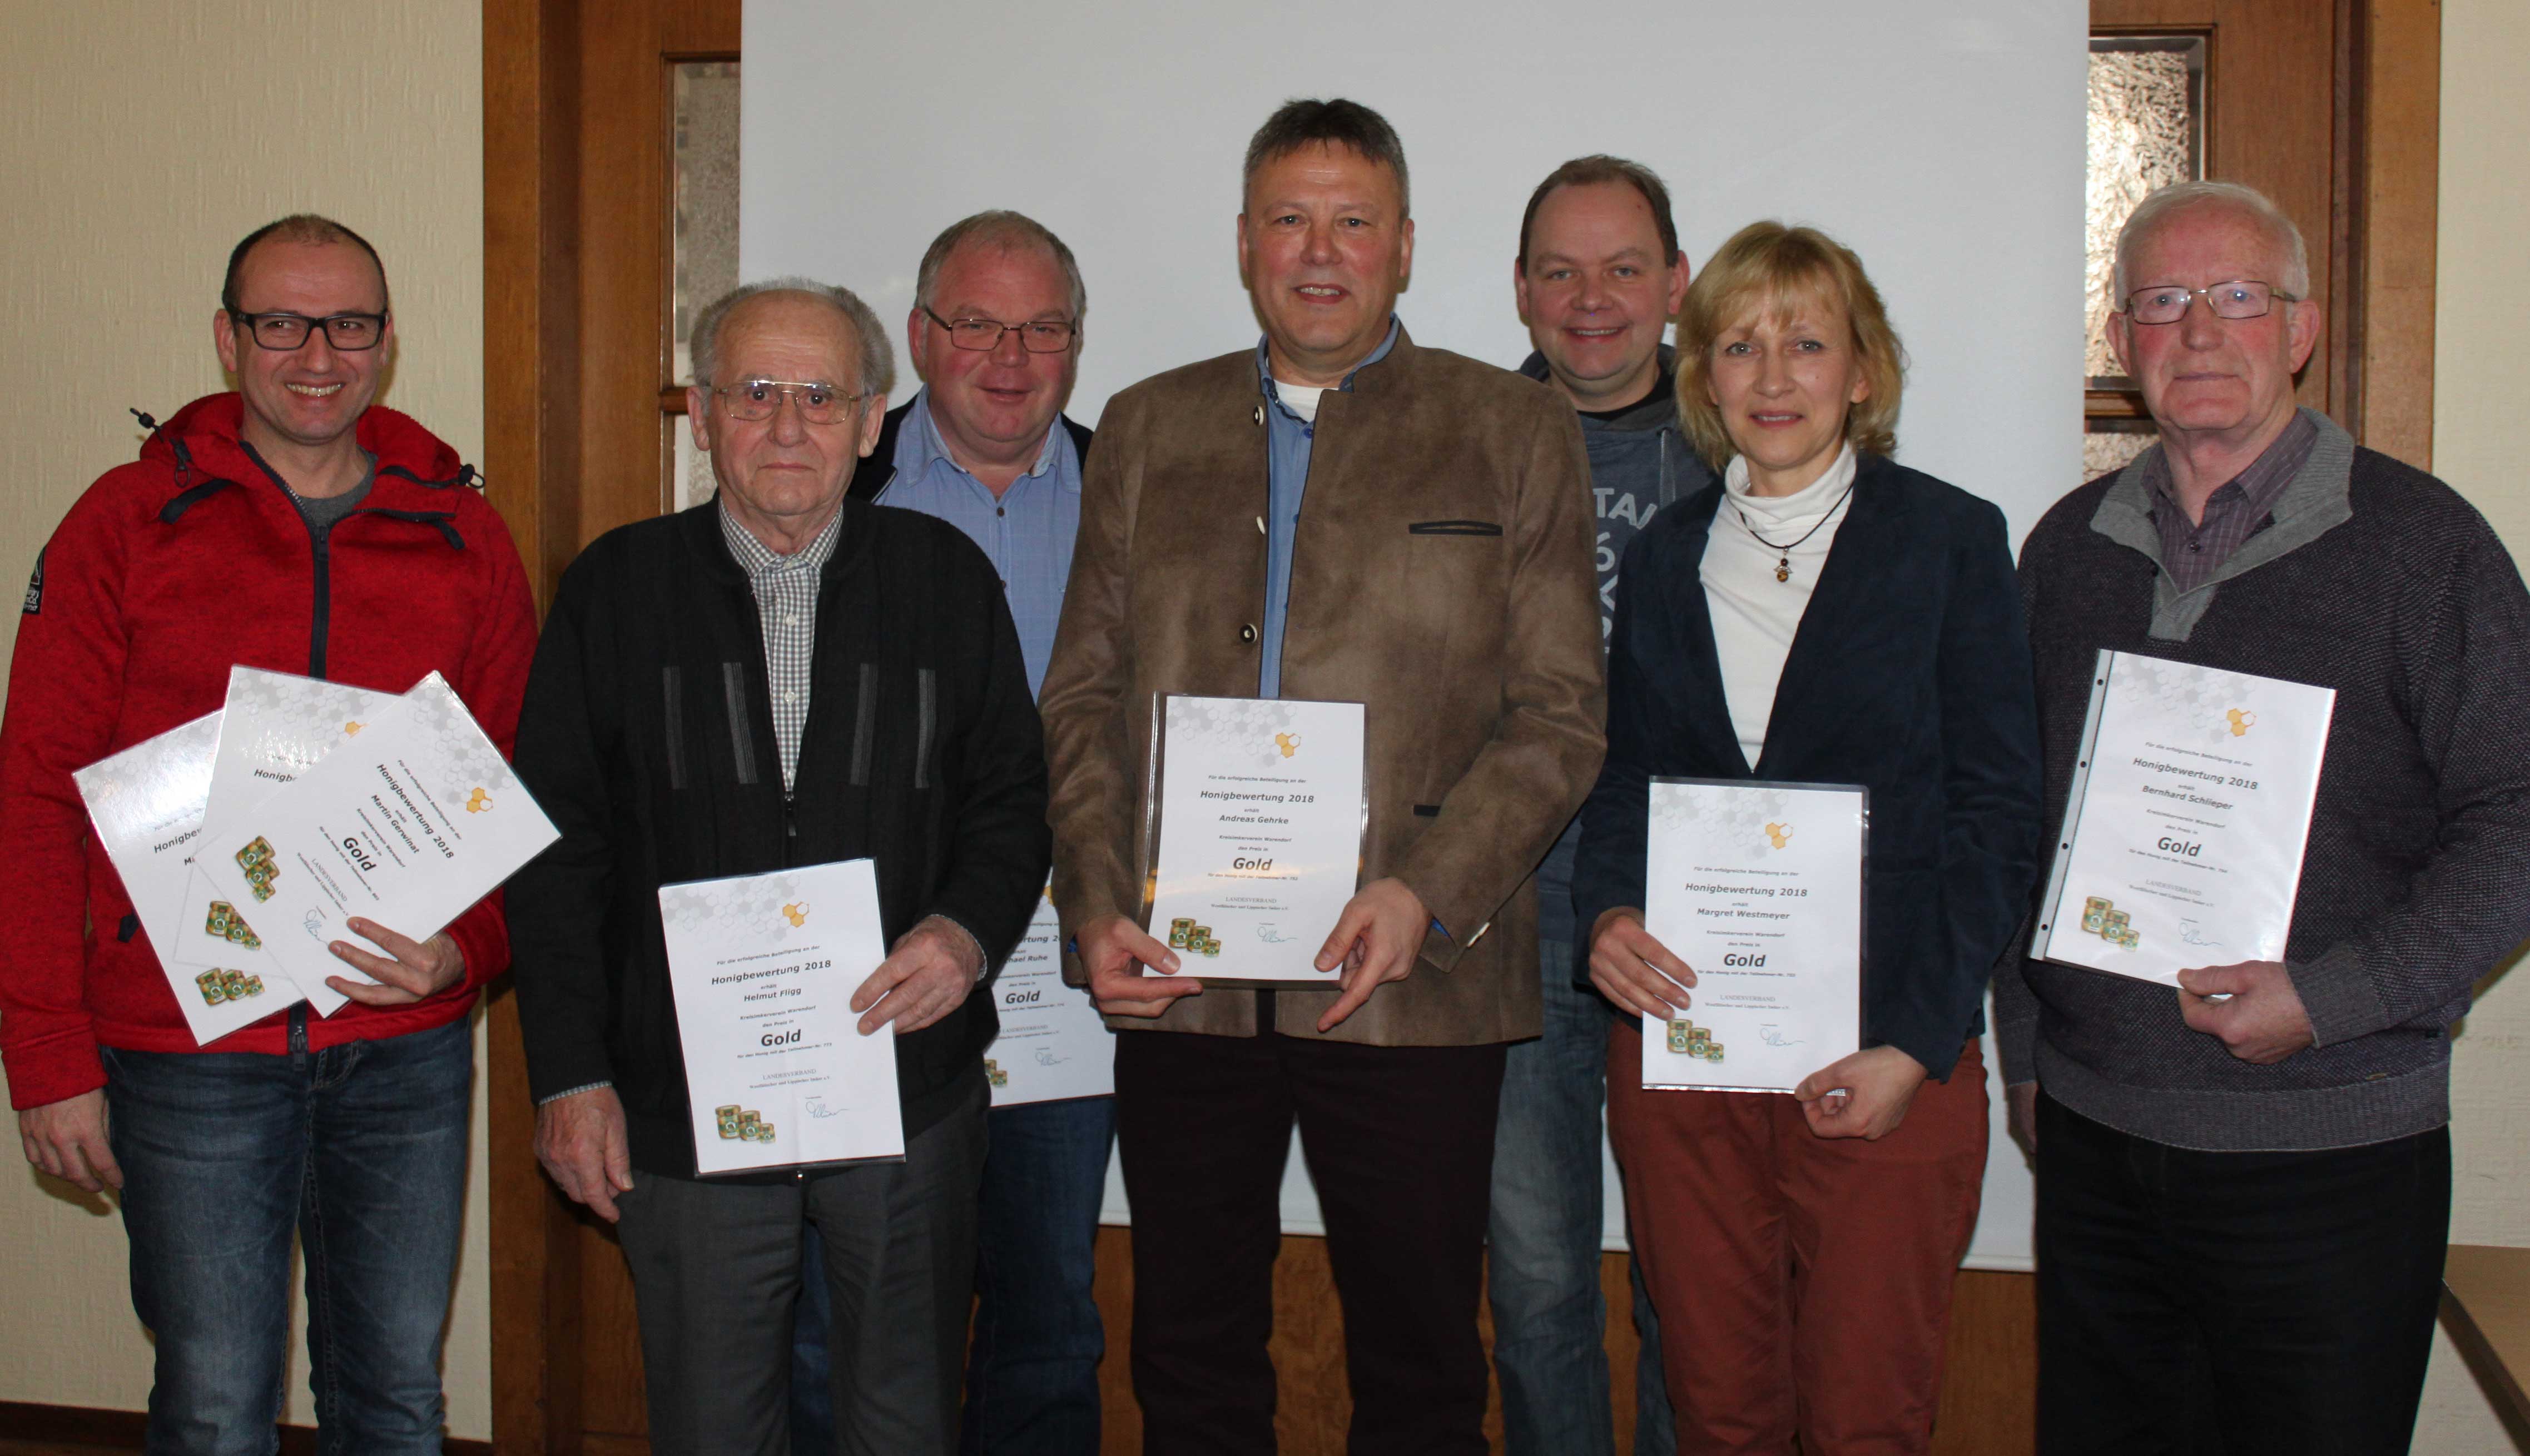 Jahreshauptversammlung 2019 – Imkerverein Warendorf und Umgebung e.V.